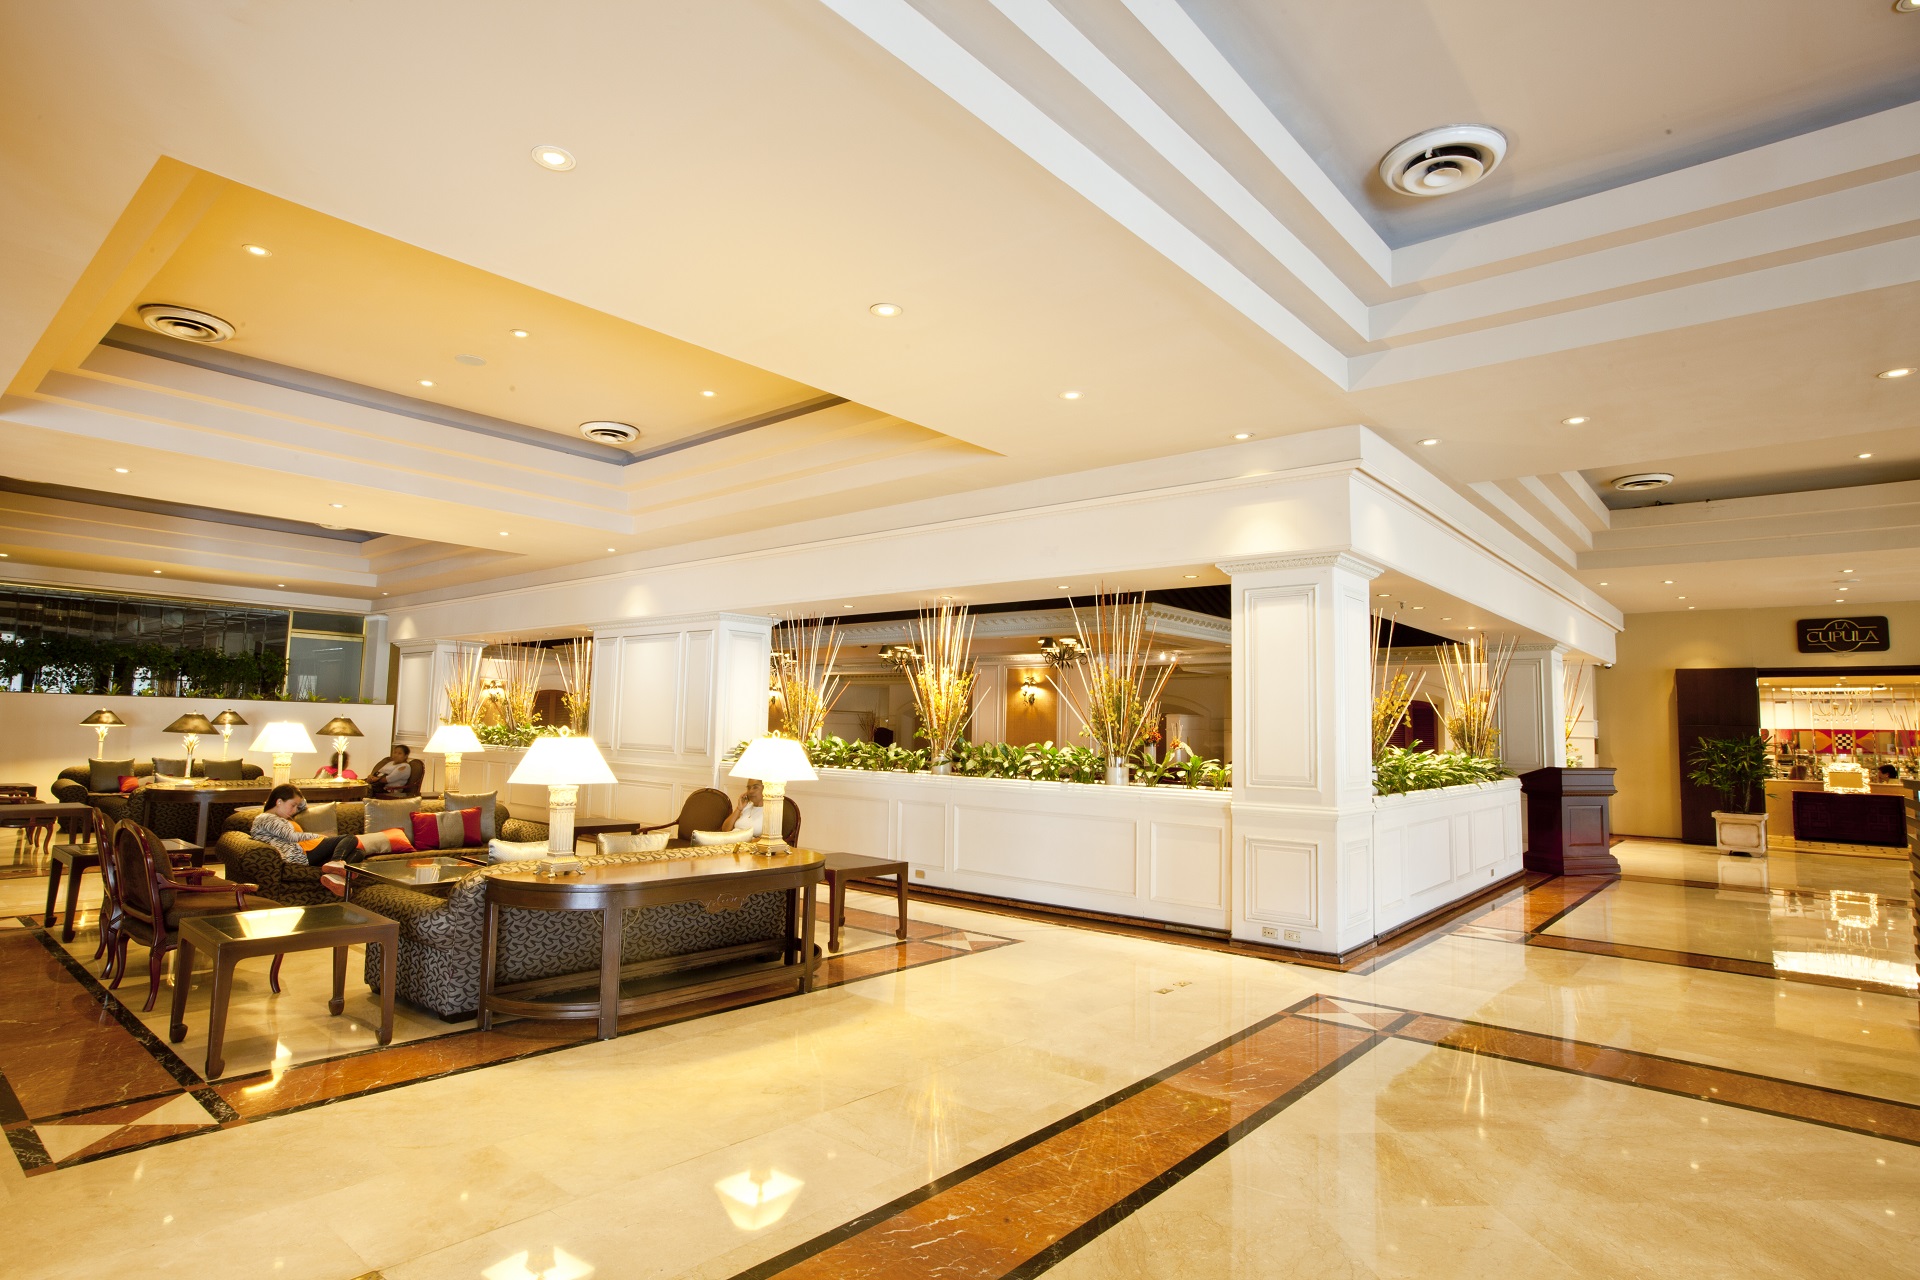 CUMBRA: Hotel Sheraton, primer hotel internacional de cinco estrellas en el Perú